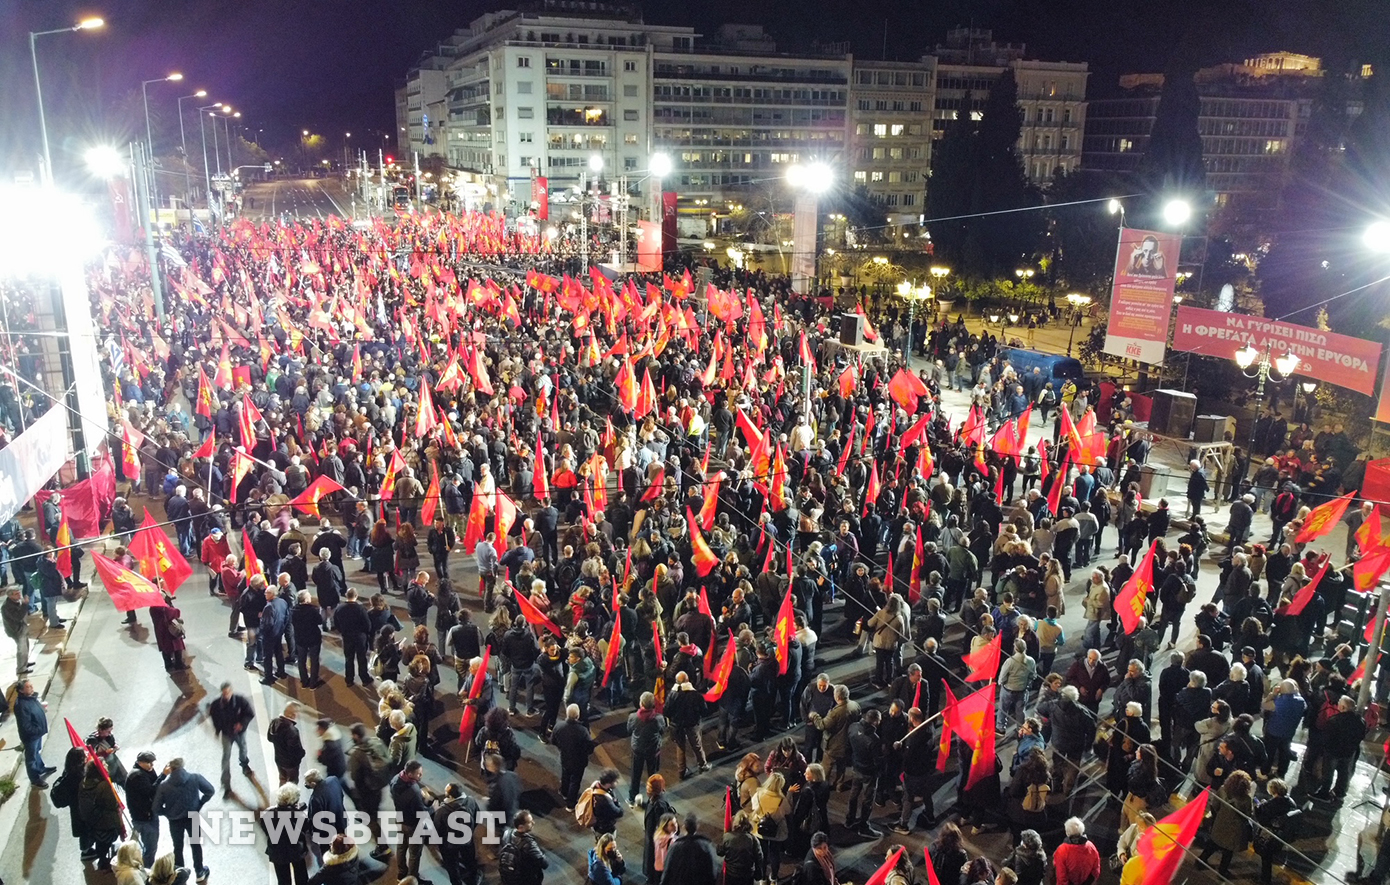 Πλήθος κόσμου στο κέντρο της Αθήνας για την αντιπολεμική συγκέντρωση του ΚΚΕ &#8211; Δείτε φωτογραφίες